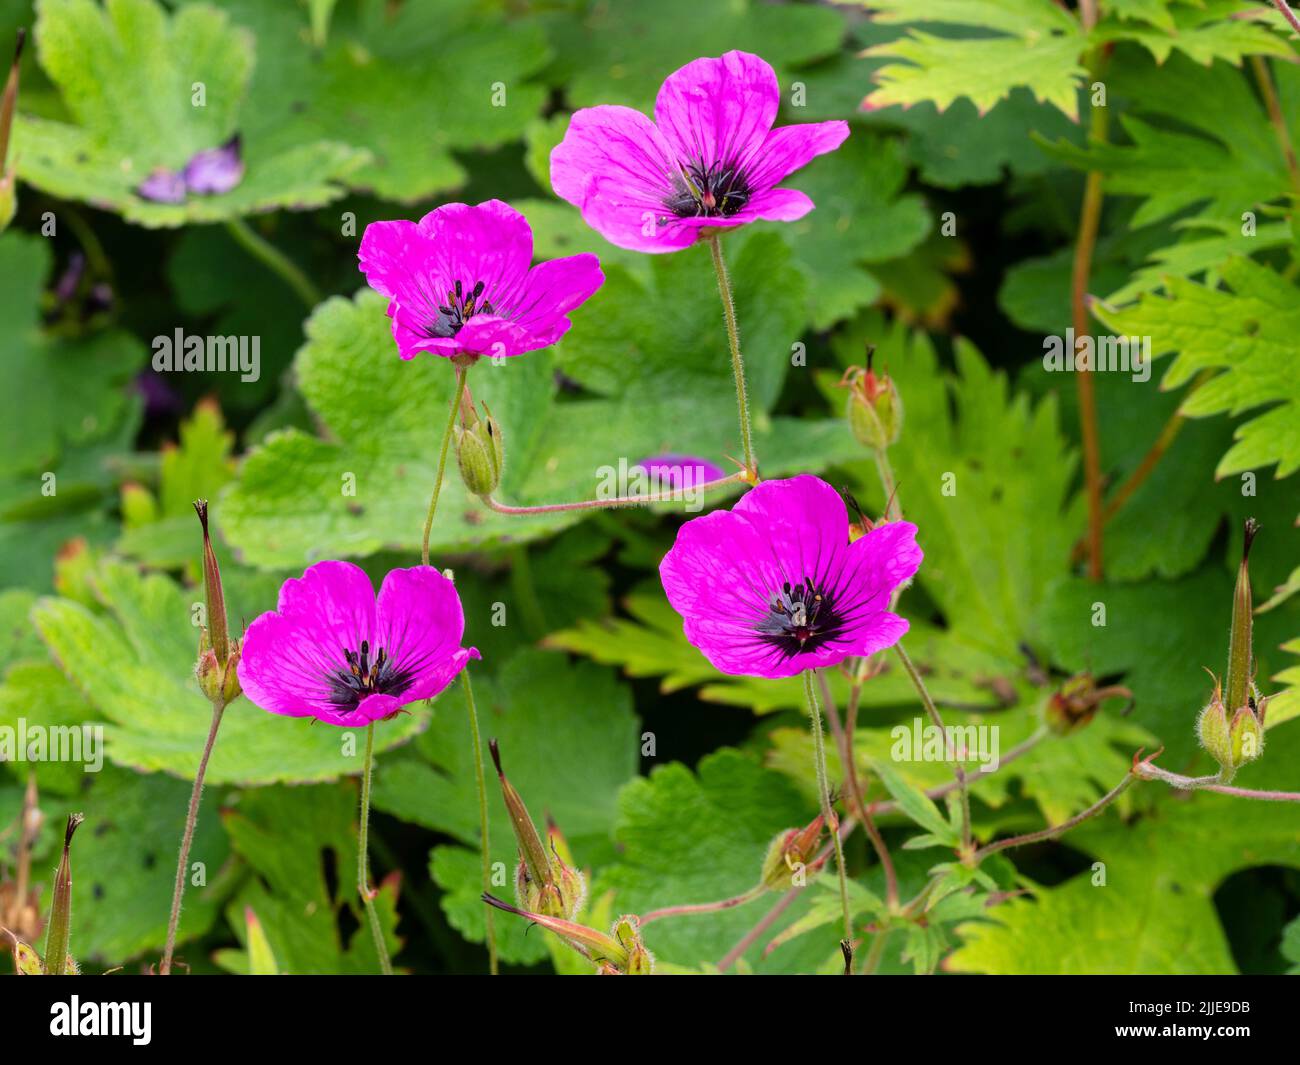 Fleurs à yeux noirs, pourpres-magenta de la vivace robuste été à automne fleurissant Geranium psilostemon, le crâne arménien, un géniteur vigoureux Banque D'Images